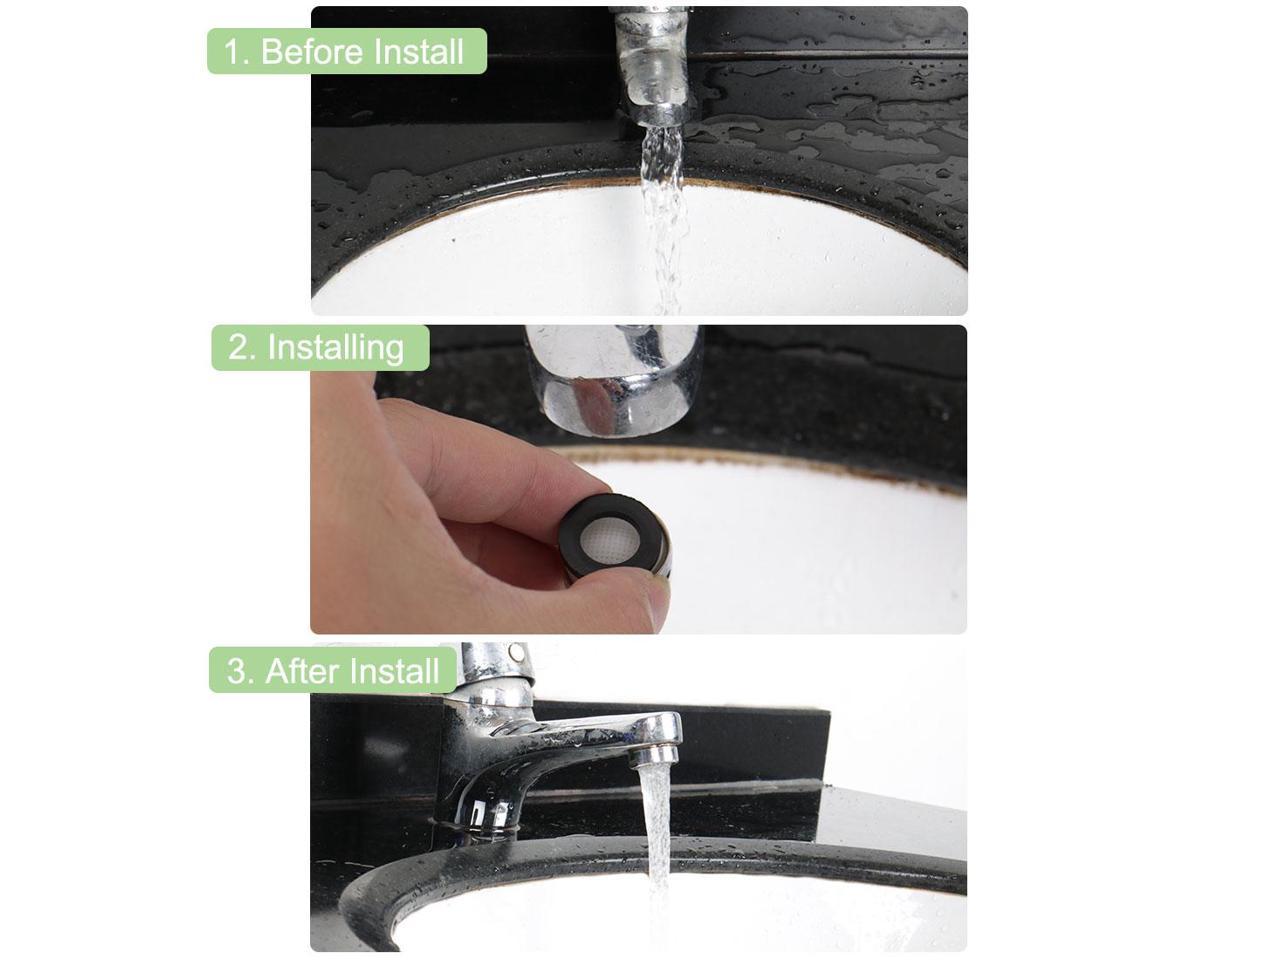 uxcell 5pcs 20mm Faucet Aerators Universal Male Faucet Replacement Part for Bathroom Lavatory Kitchen Sinks Faucet Bidet Faucet